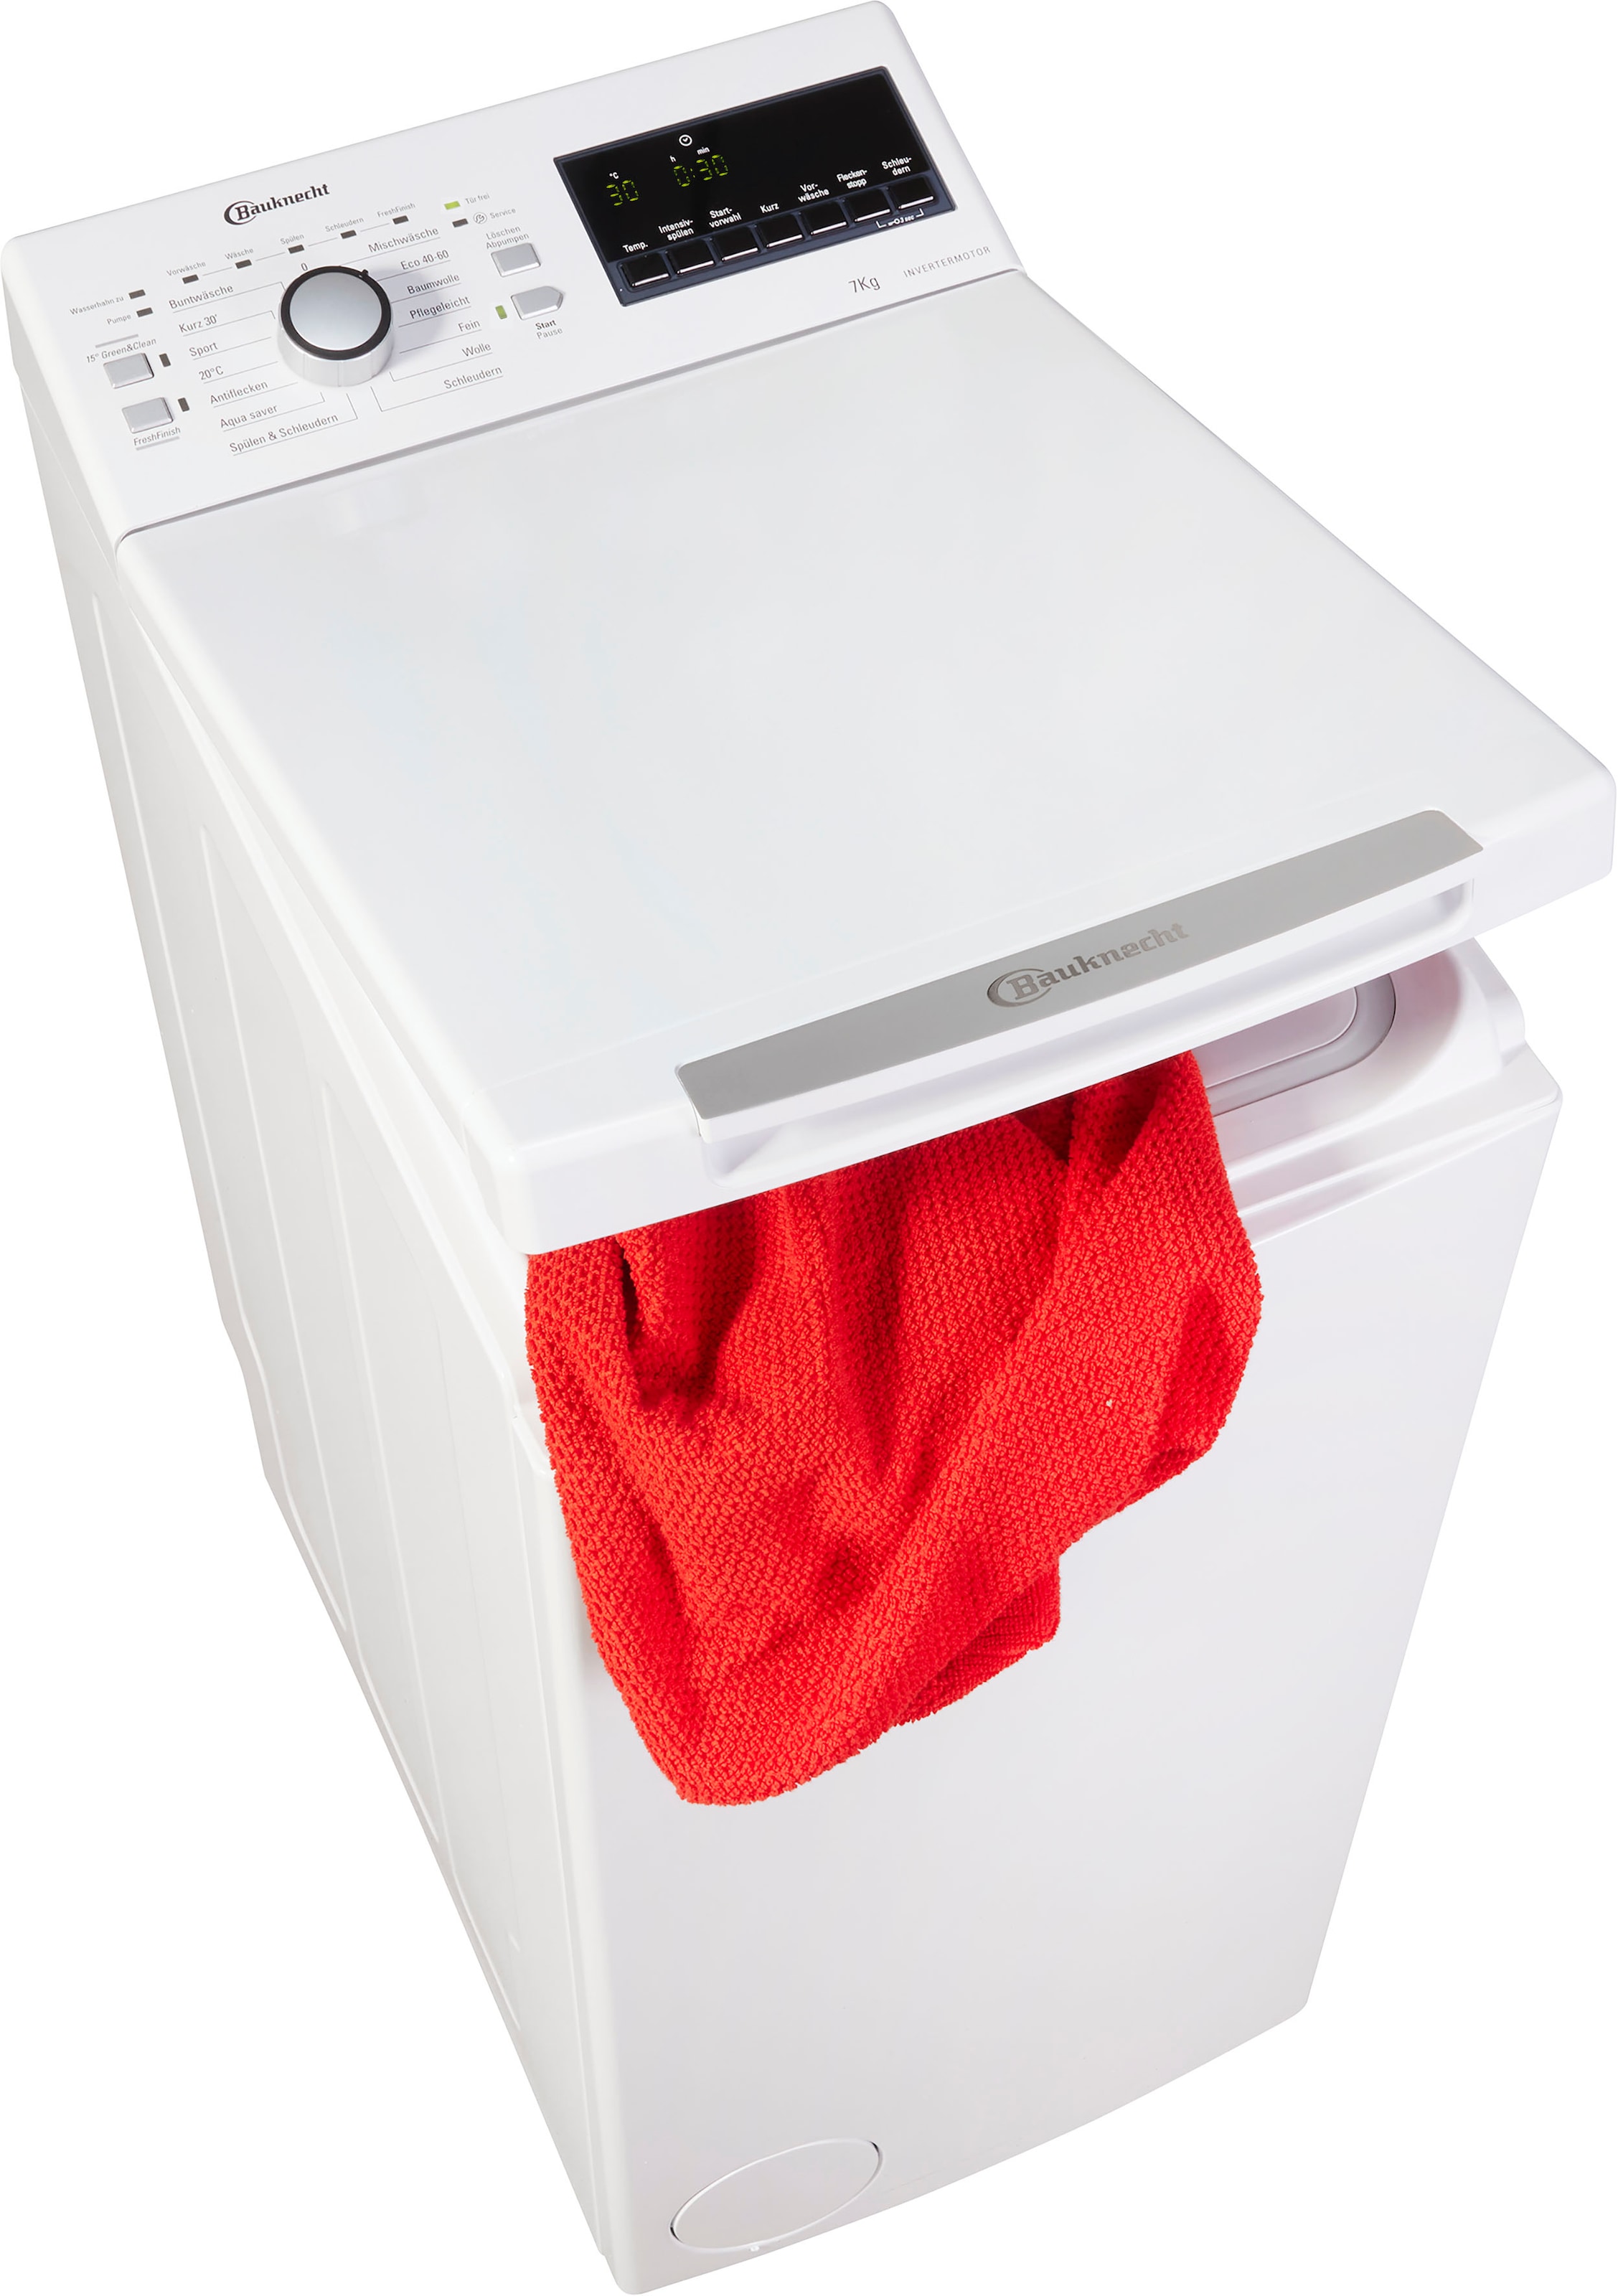 BAUKNECHT Waschmaschine Toplader »WAT WAT 7 Eco 712 B3«, jetzt Eco 1200 B3, OTTO bei 712 kg, U/min